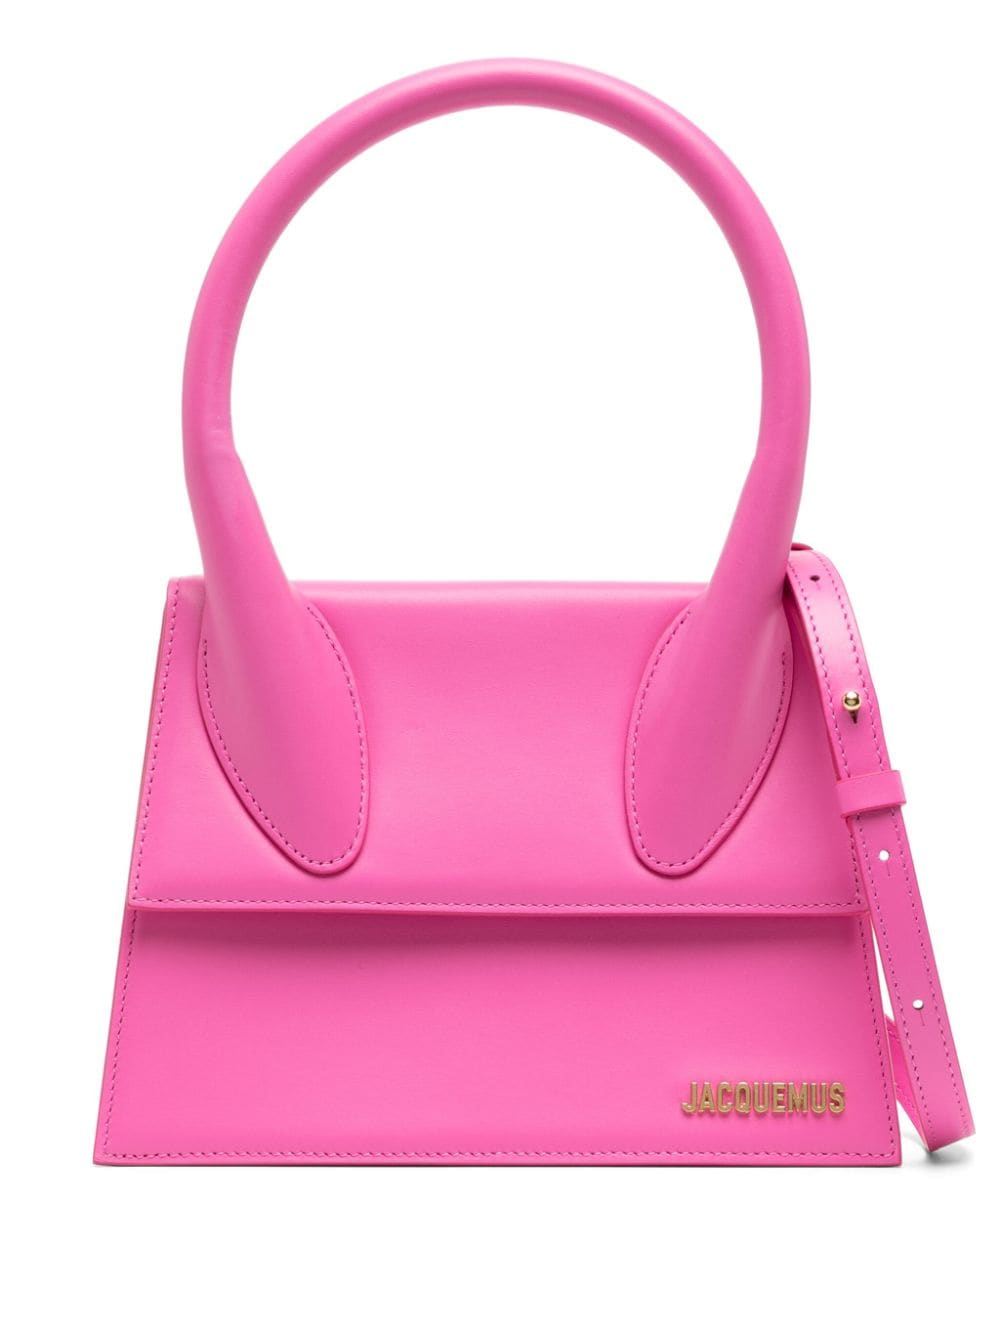 JACQUEMUS Bubblegum Pink Leather Handbag with Detachable Shoulder Strap